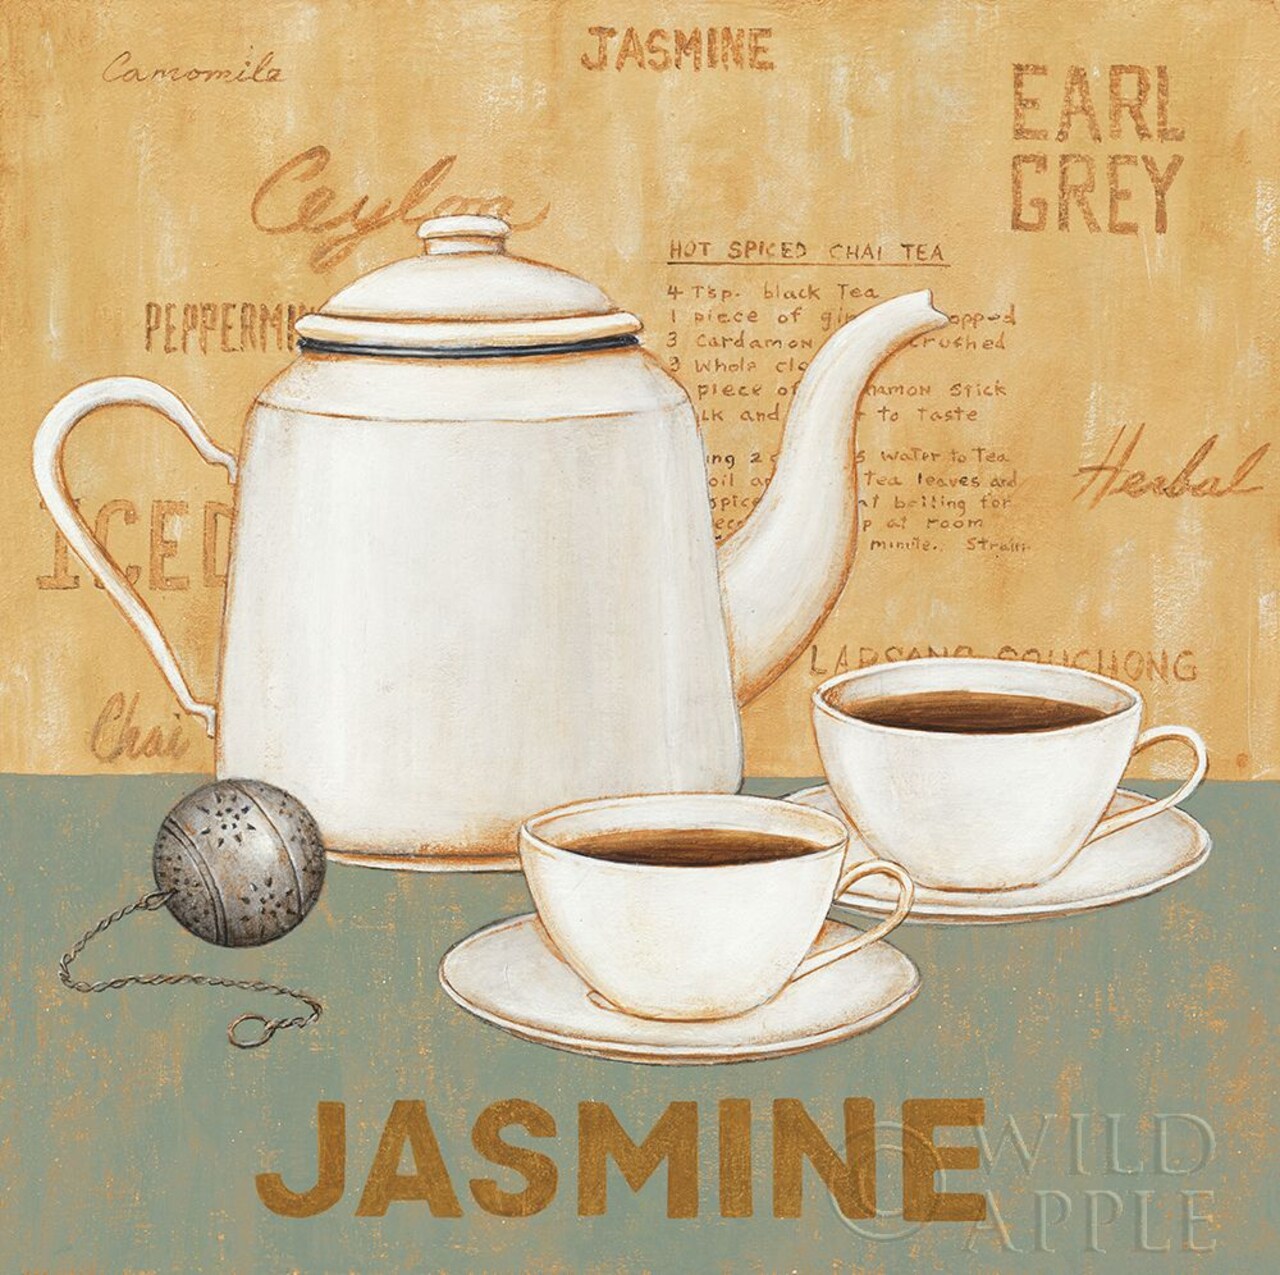 Jasmine Tea Teal Poster Print by David Carter Brown # 37681